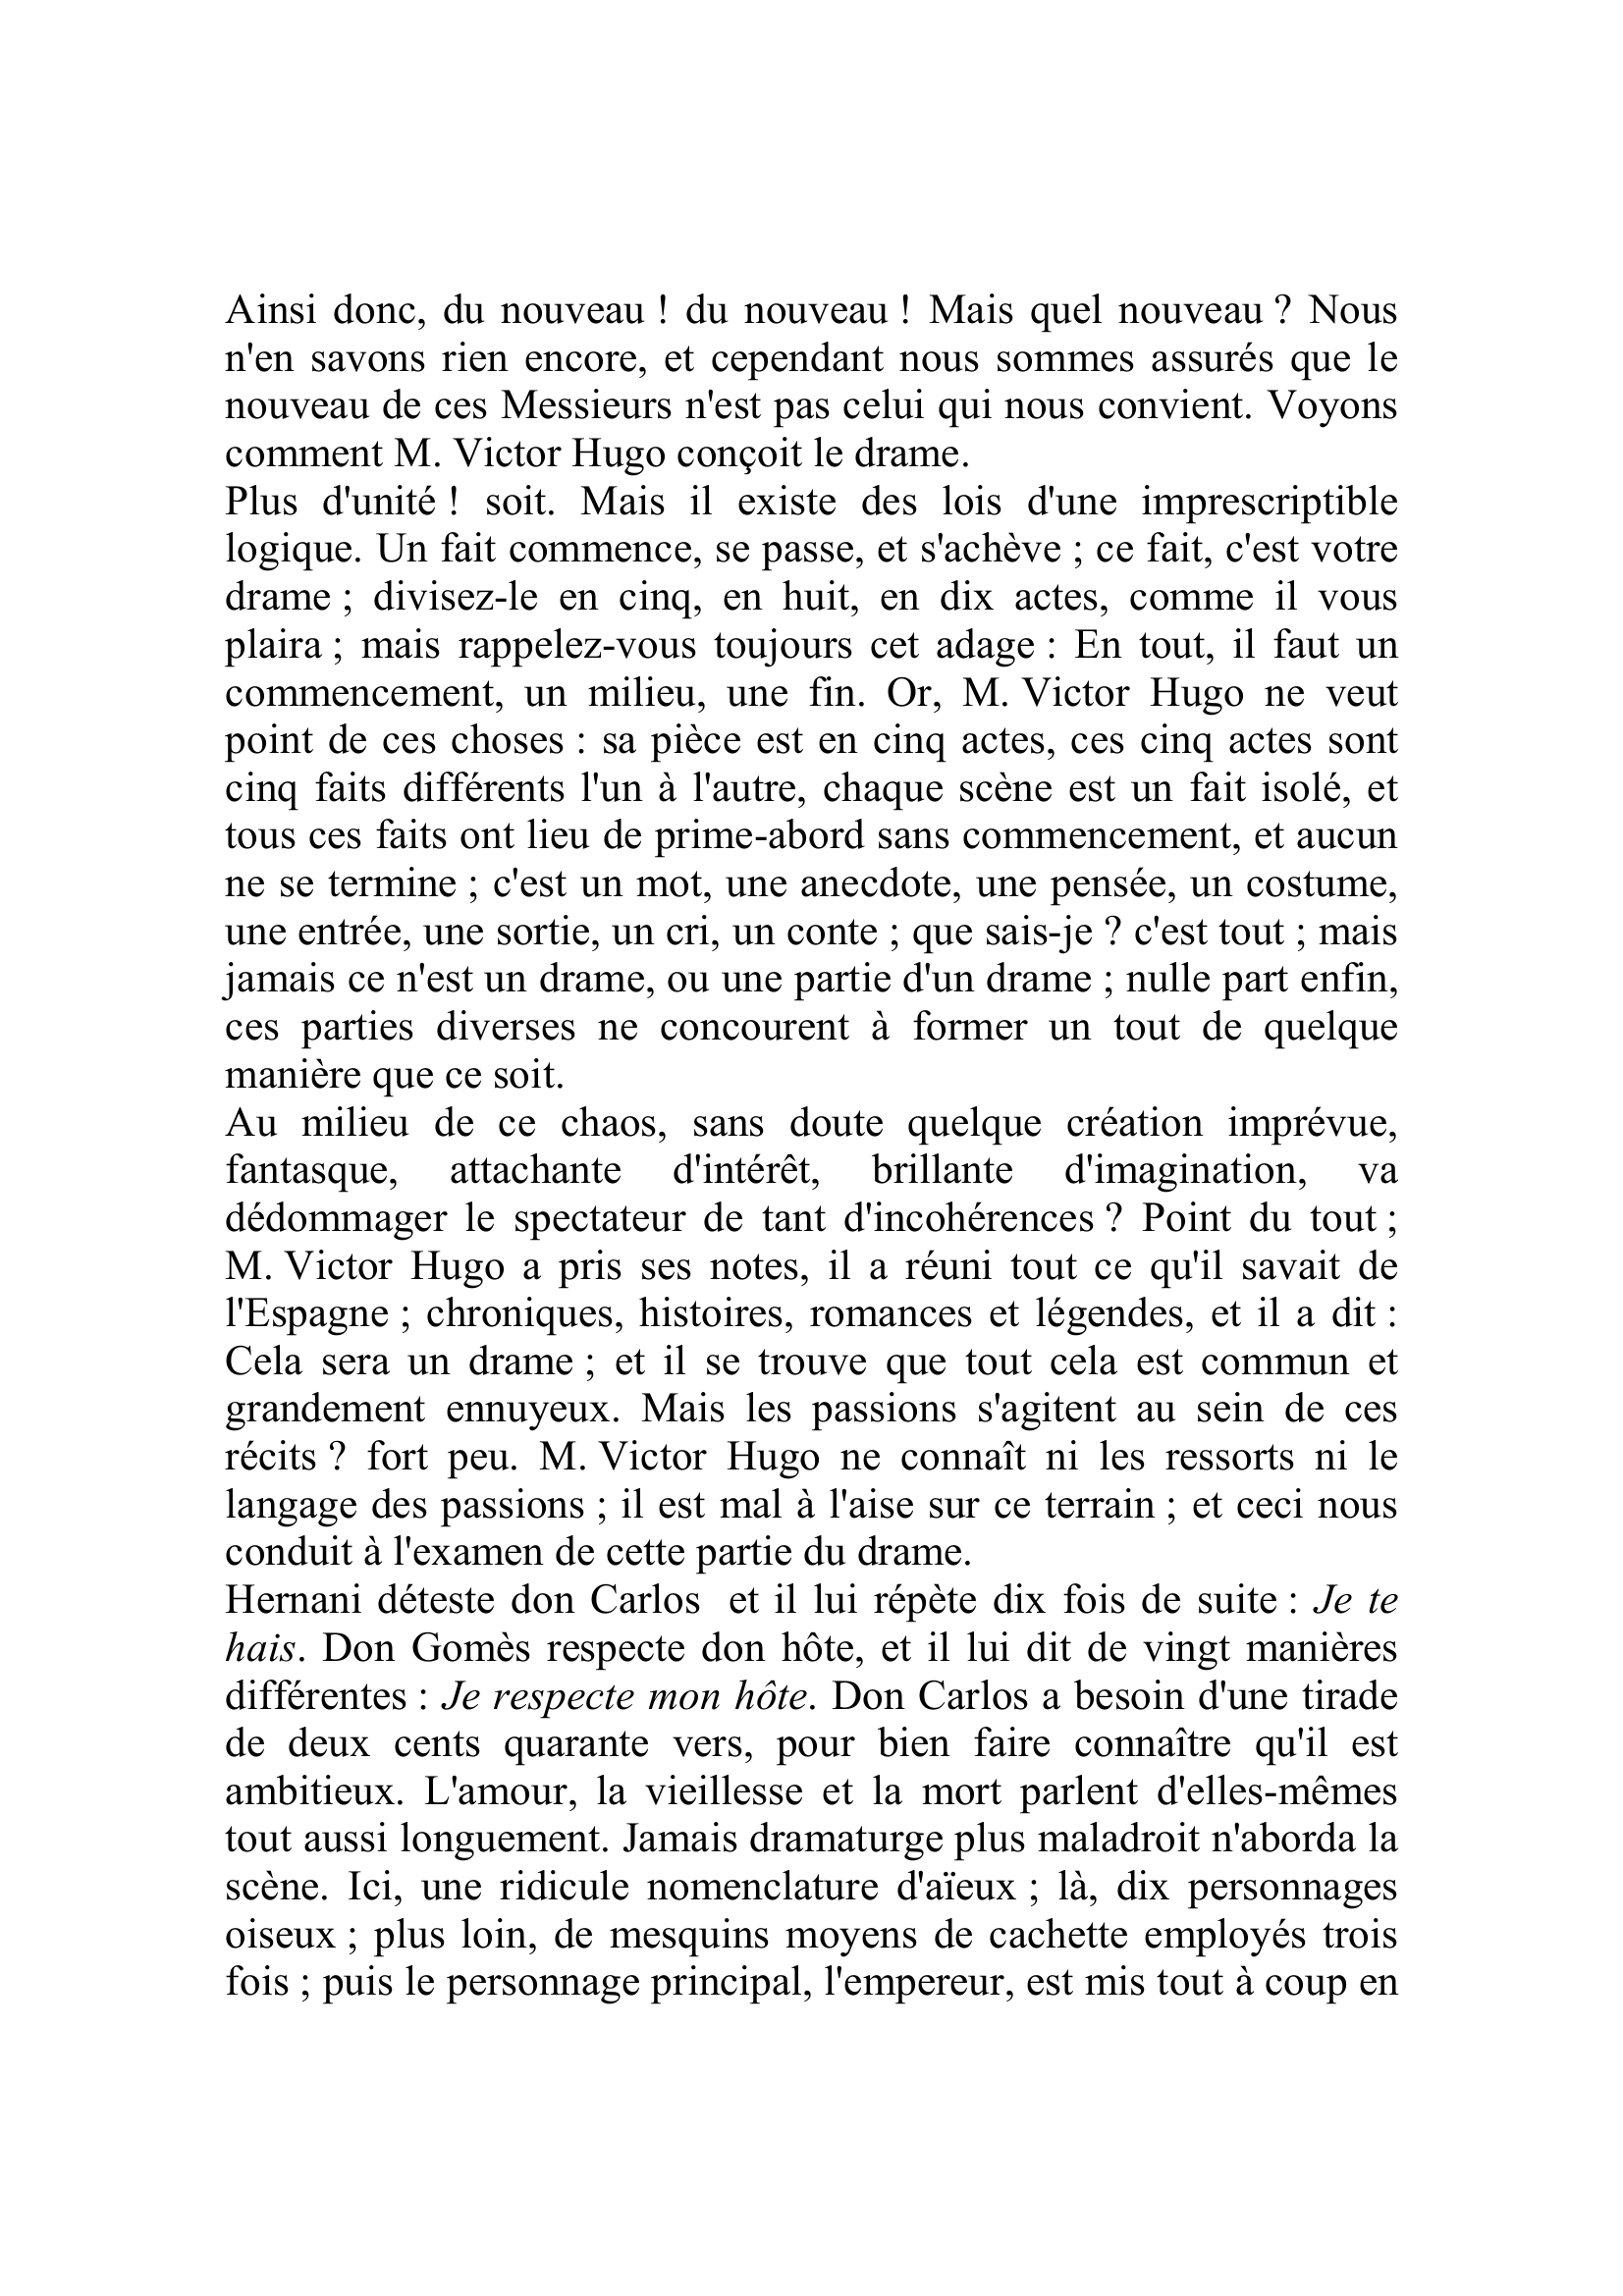 Prévisualisation du document Le Corsaire
27 février 1830

HERNANI
Il nous a d'abord paru convenable d'établir les faits ; nous avons donc avant tout raconté le drame.